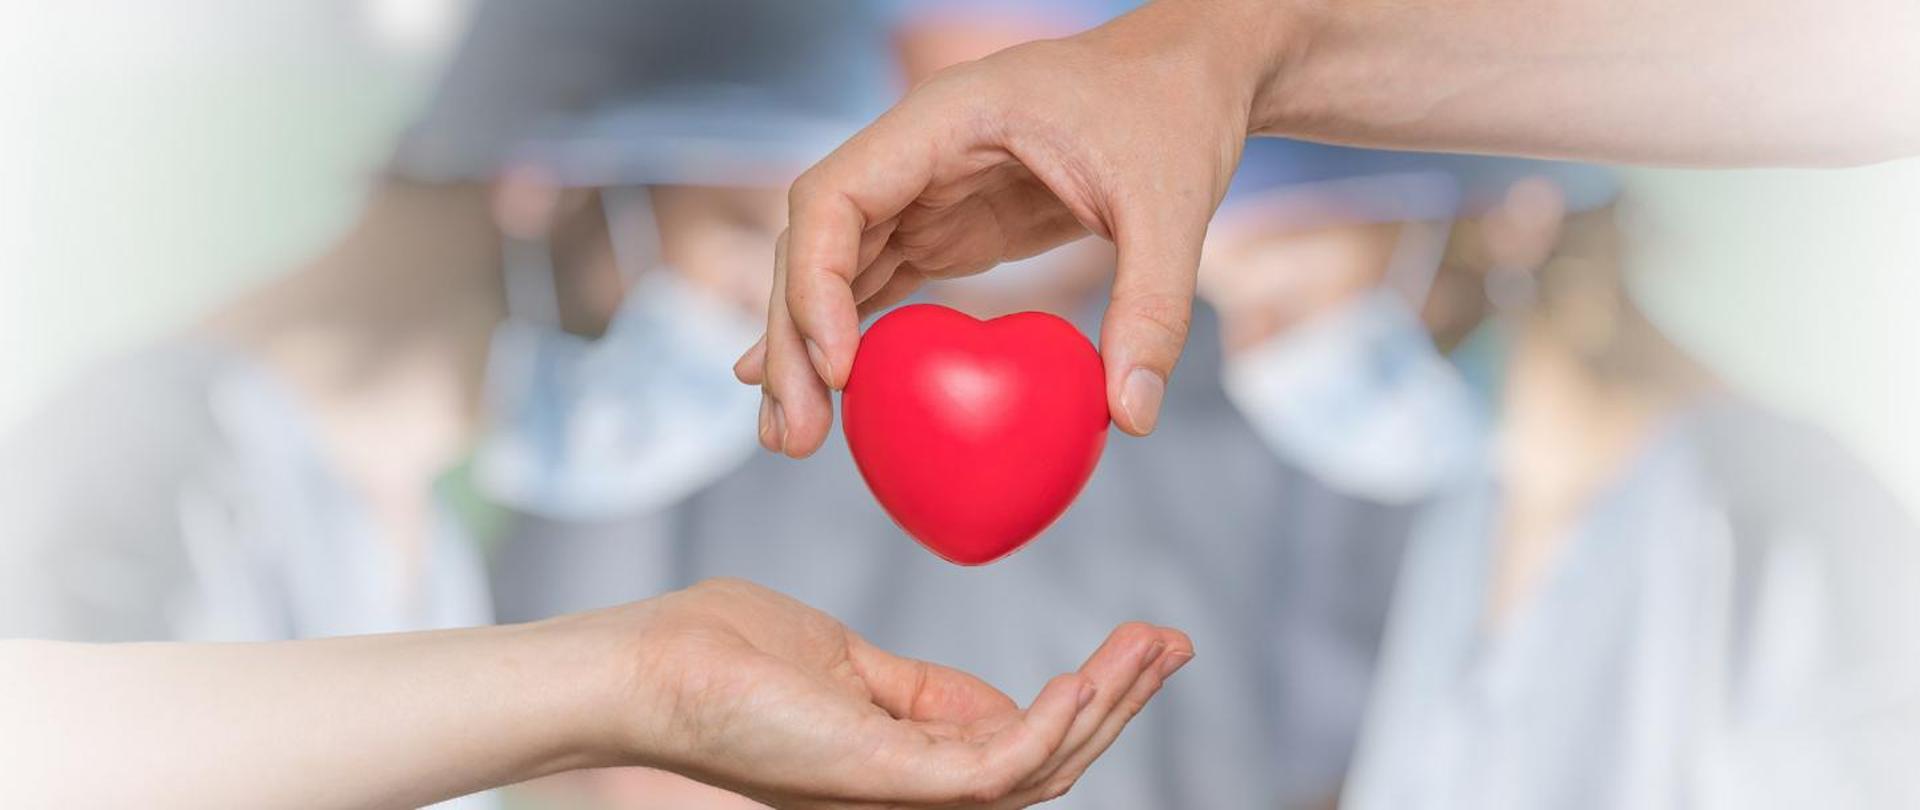 Grafika oparta na fotografii gdzie z dłoni do dłoni przekazywane jest plastikowe serduszko, a w tle rozmyte postacie lekarzy podczas prawdopodobnie operacji transplantacji serca.